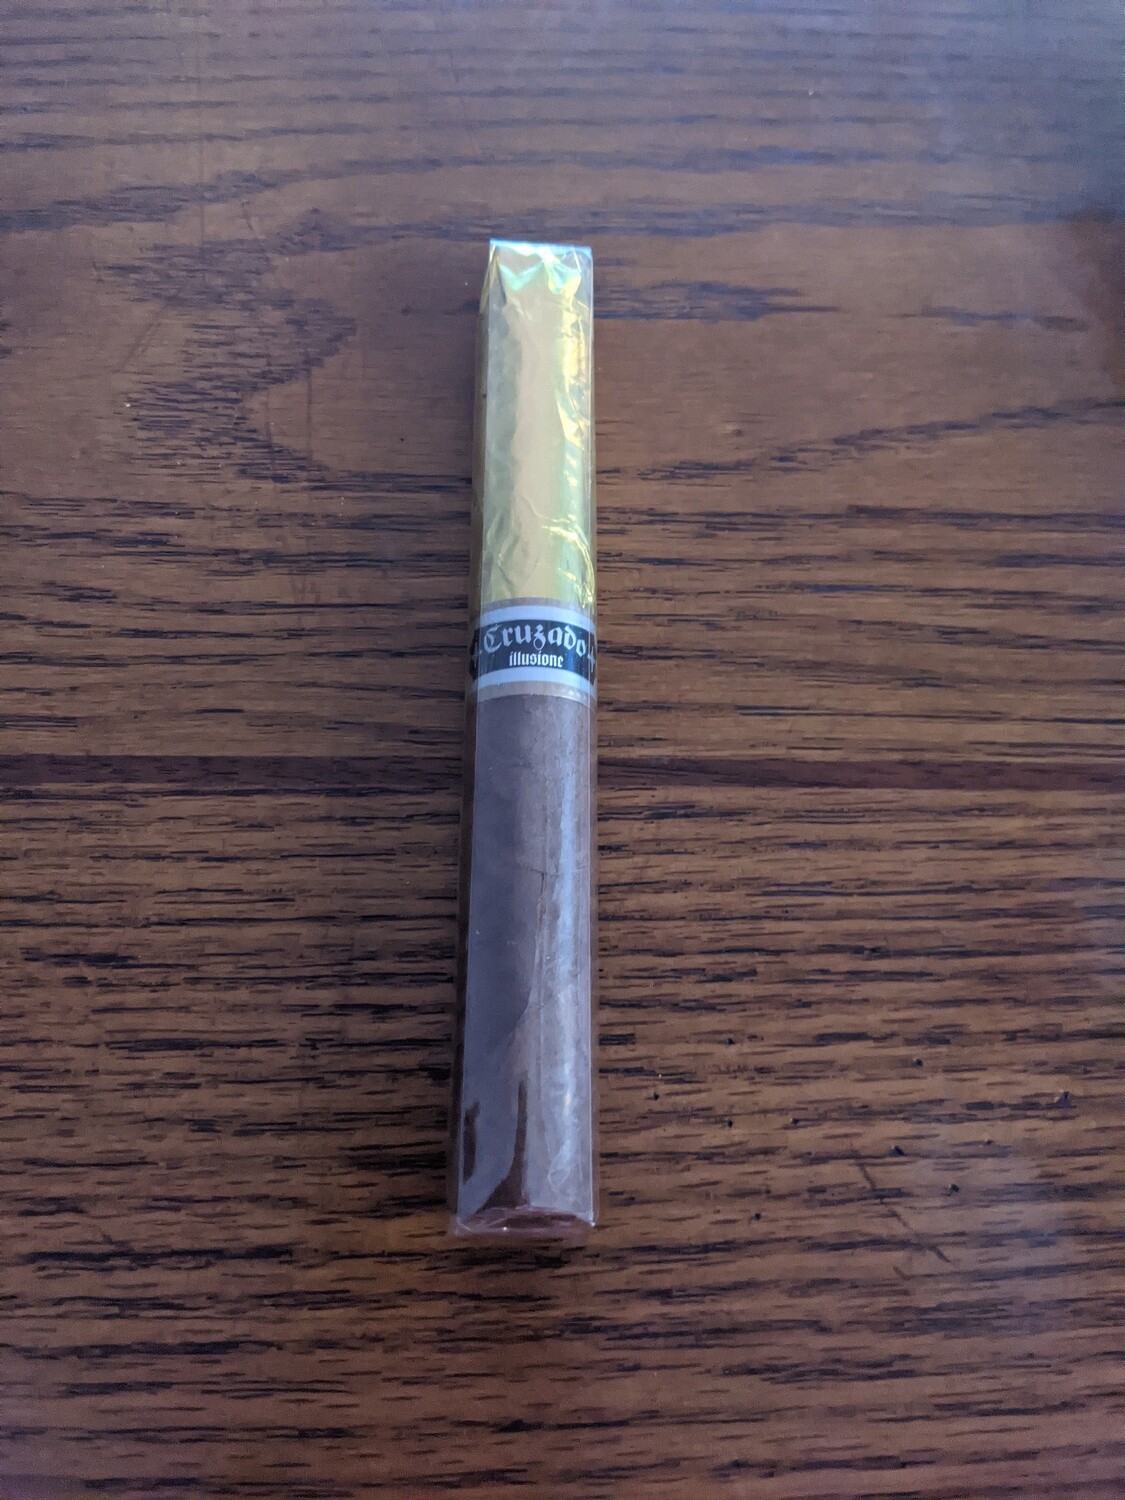 Illusione Cruzado Classic Marelas Supremas 6 1/4 X 52 Single Cigar